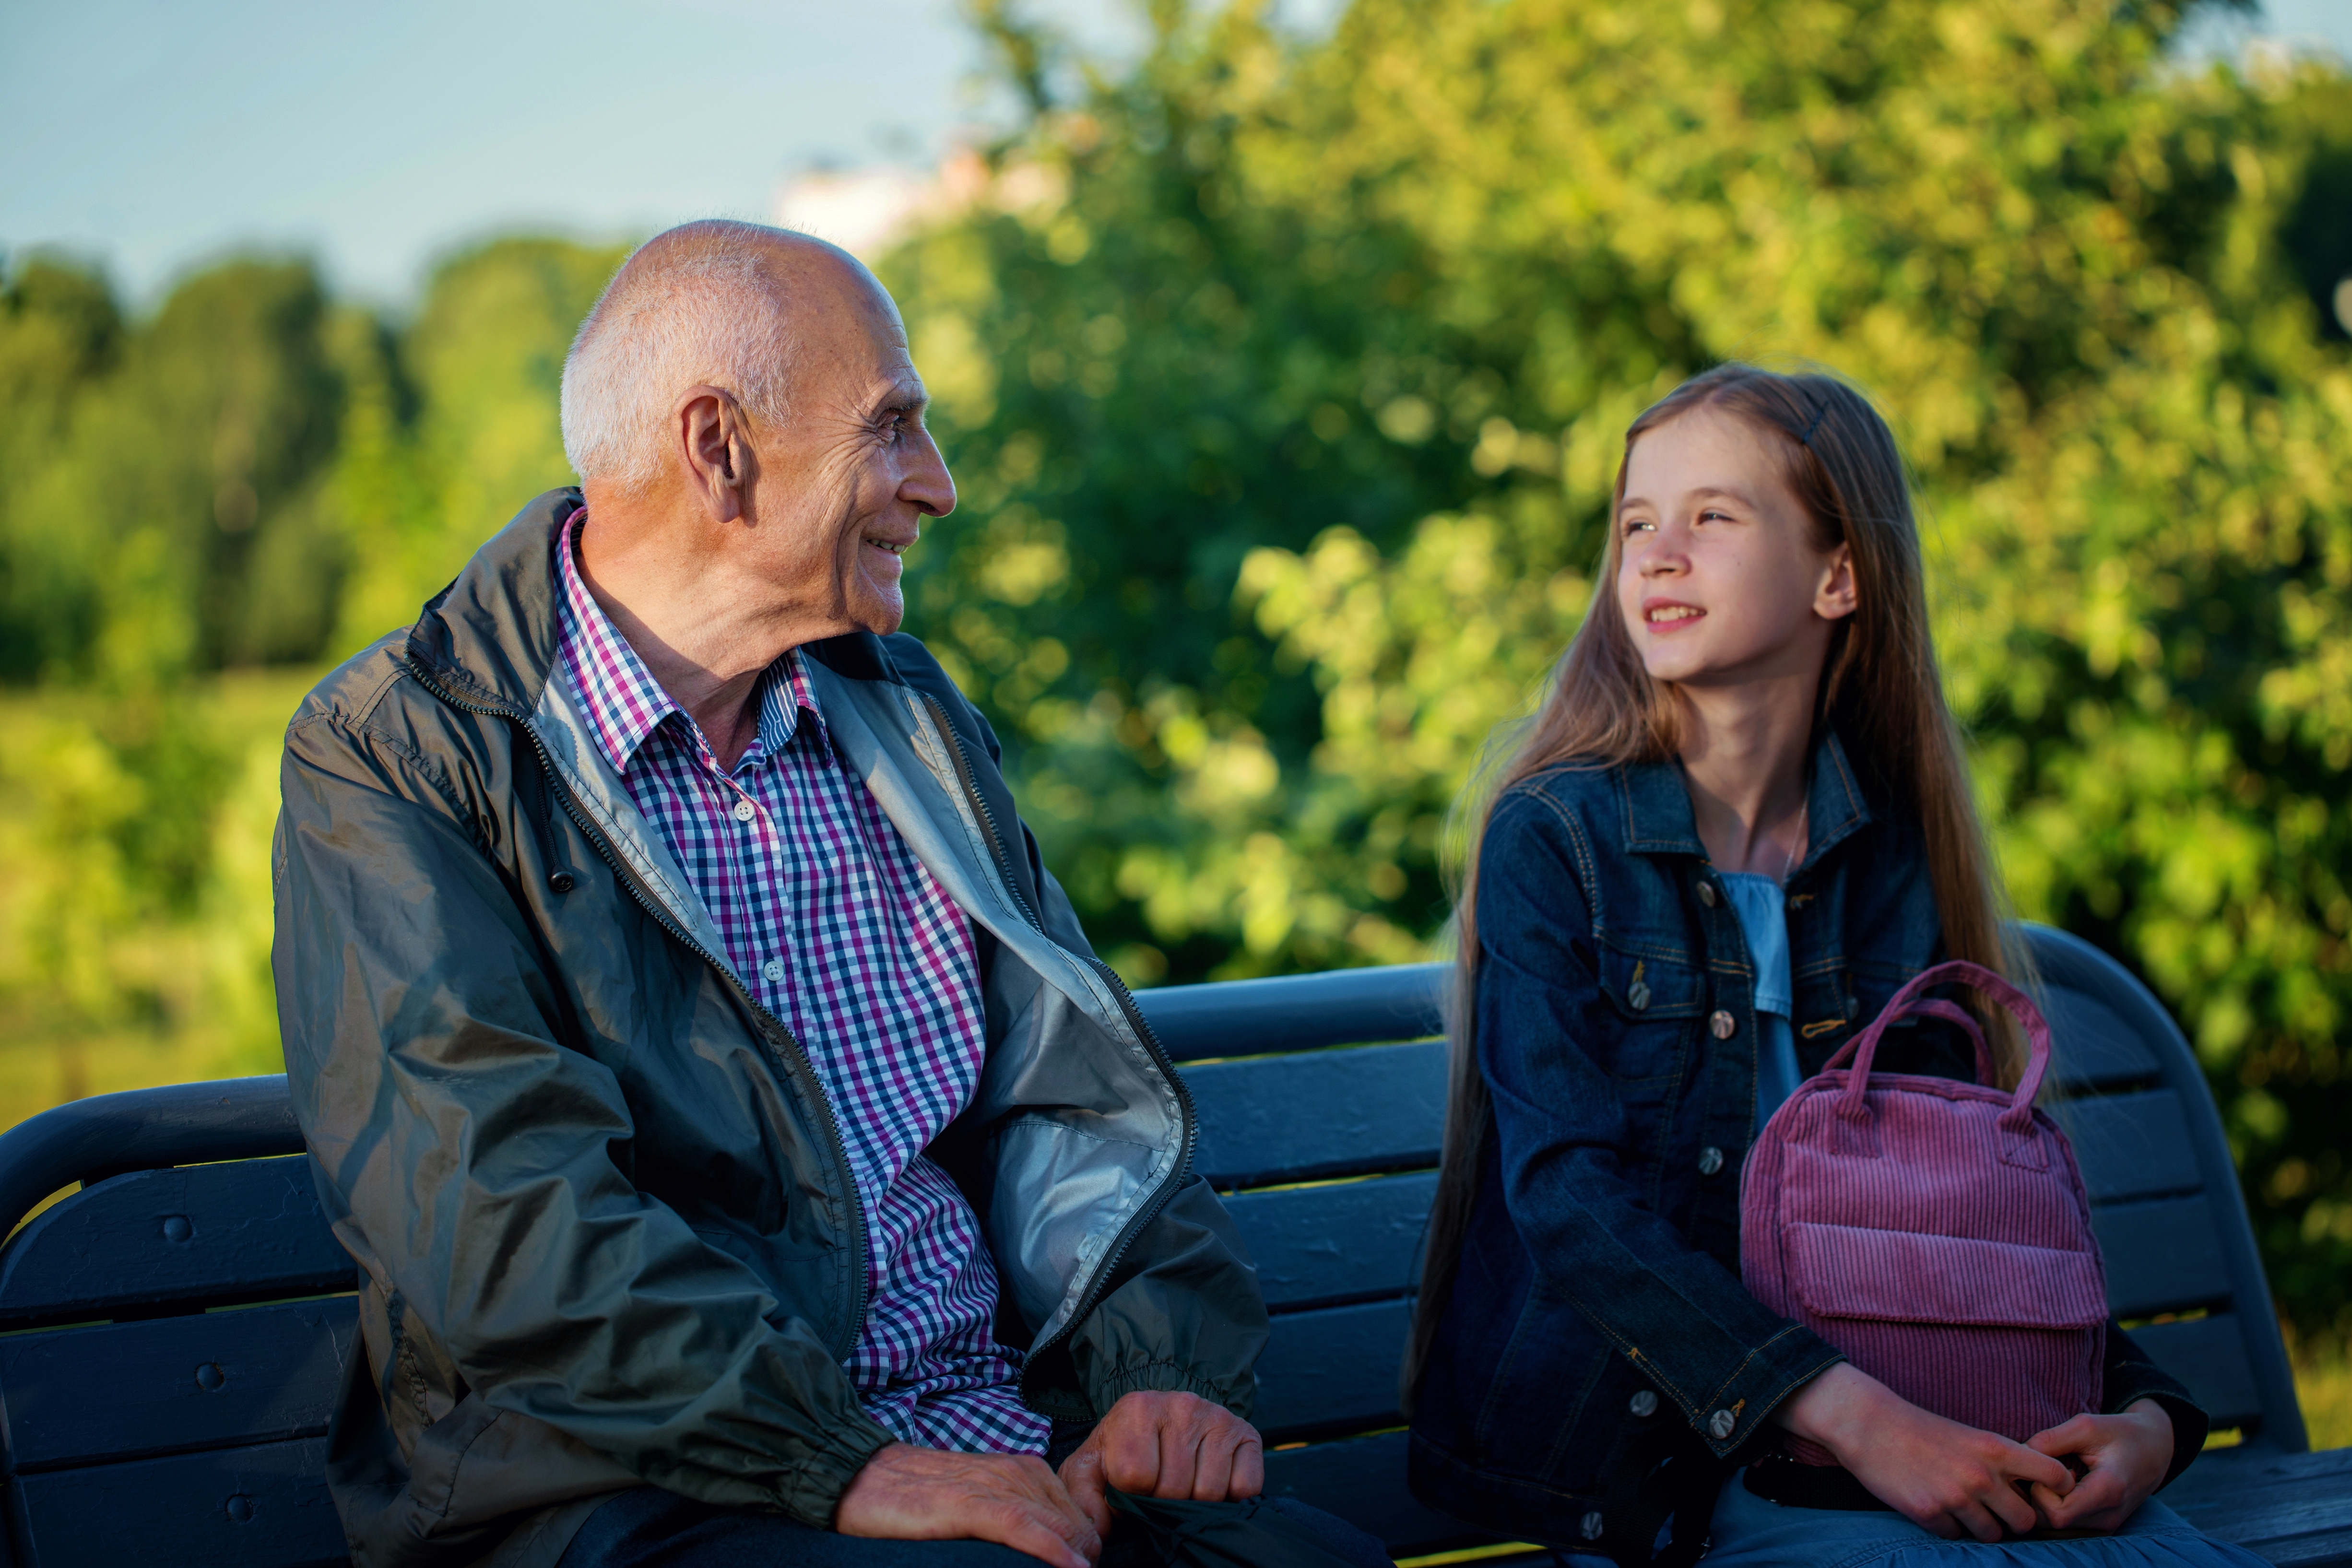 Discussion entre filles et grand-père | Source : Shutterstock